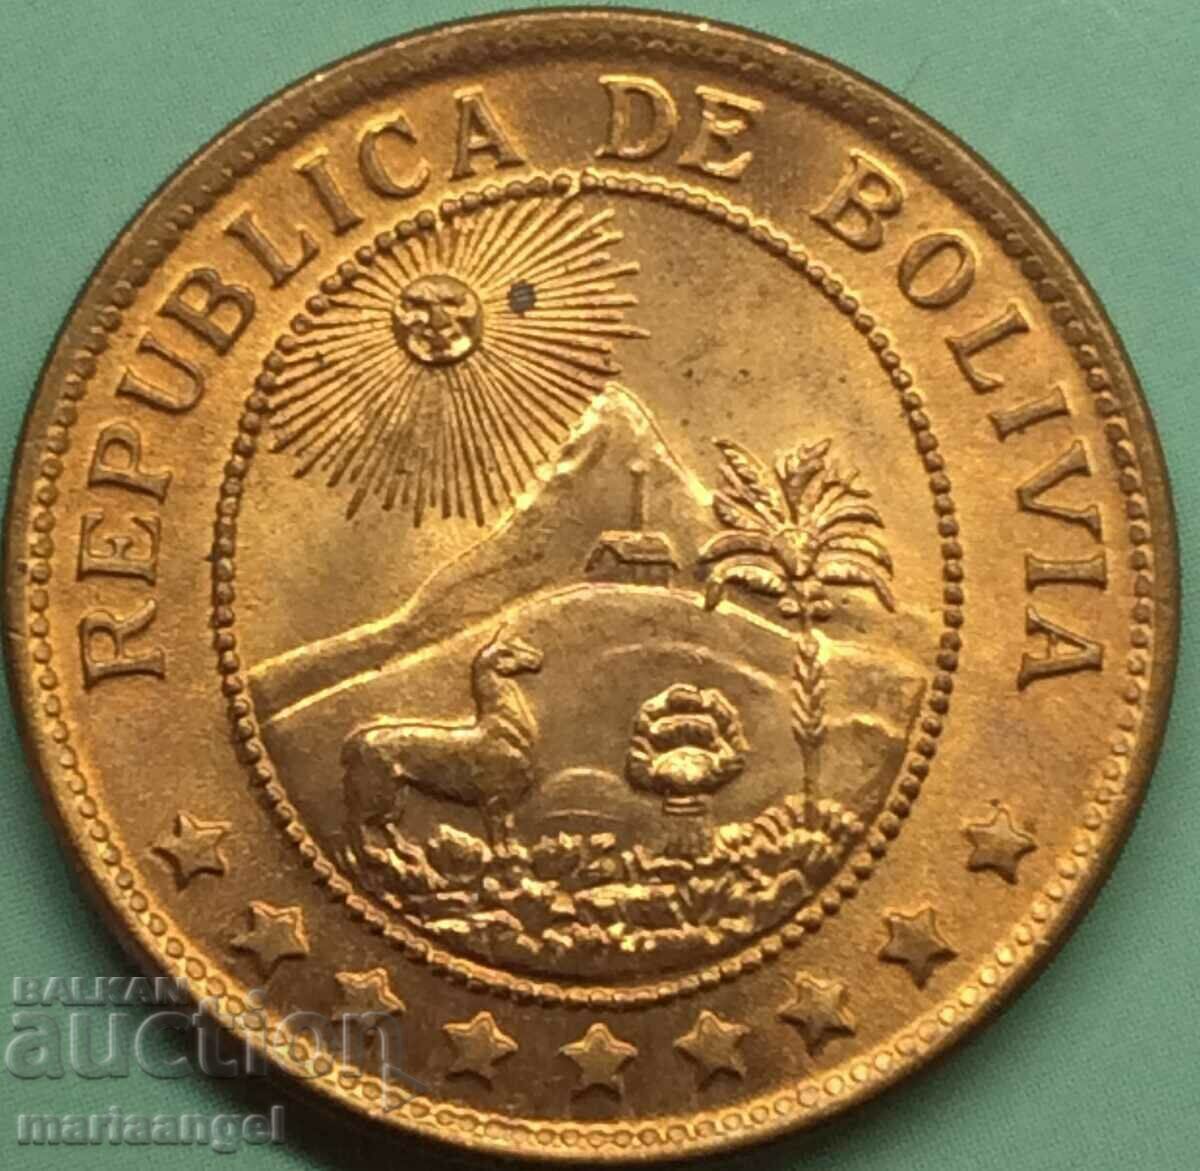 Bolivia 1942 Restrike de 50 de cenți - pentru monedă rară